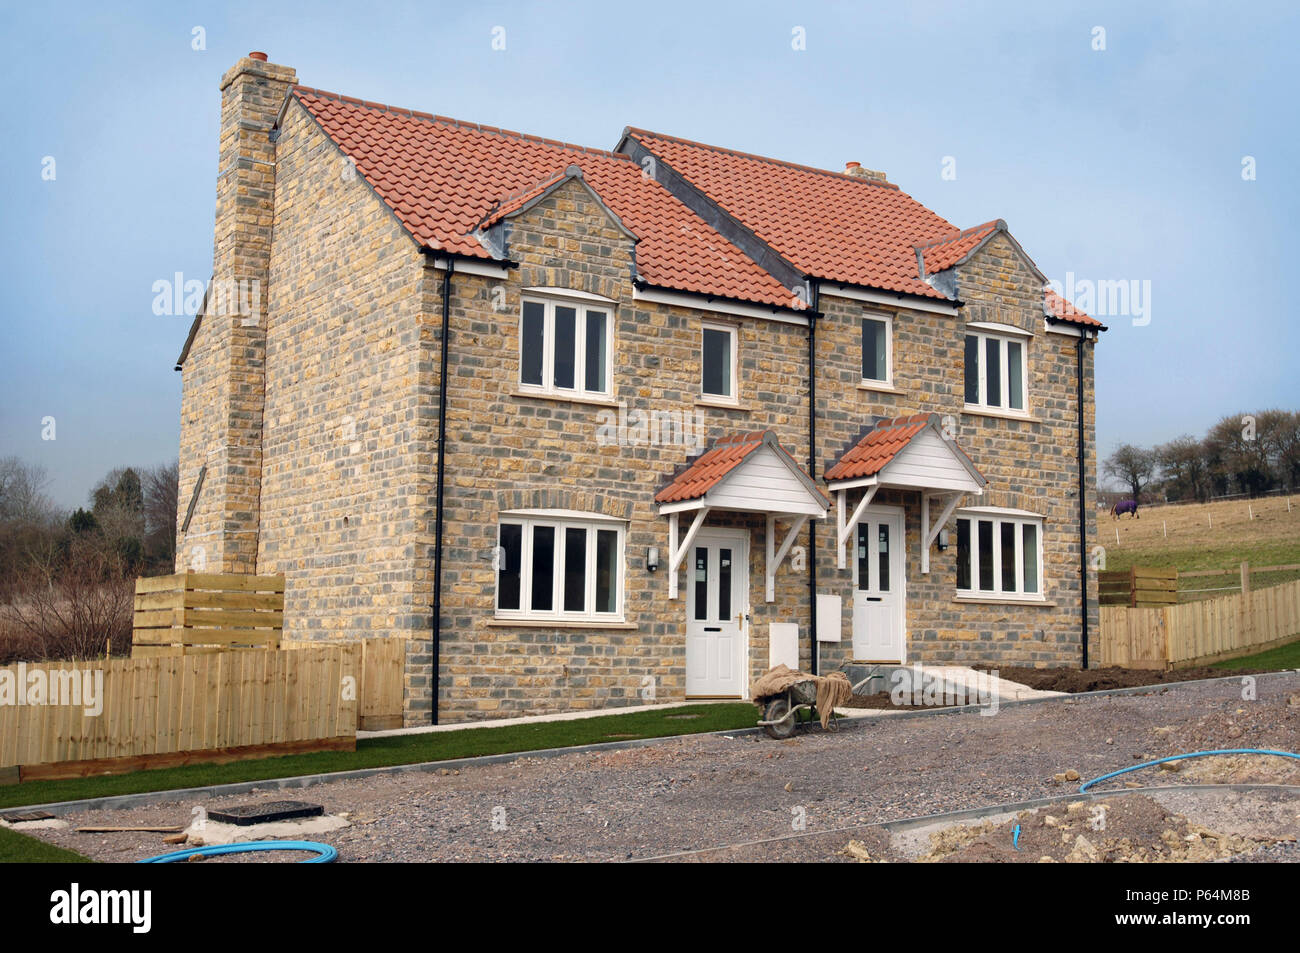 Le logement abordable construit par Glastonbury Festival Rock fondateur Michael Eavis dans le village de Pilton, Somerset, UK Banque D'Images